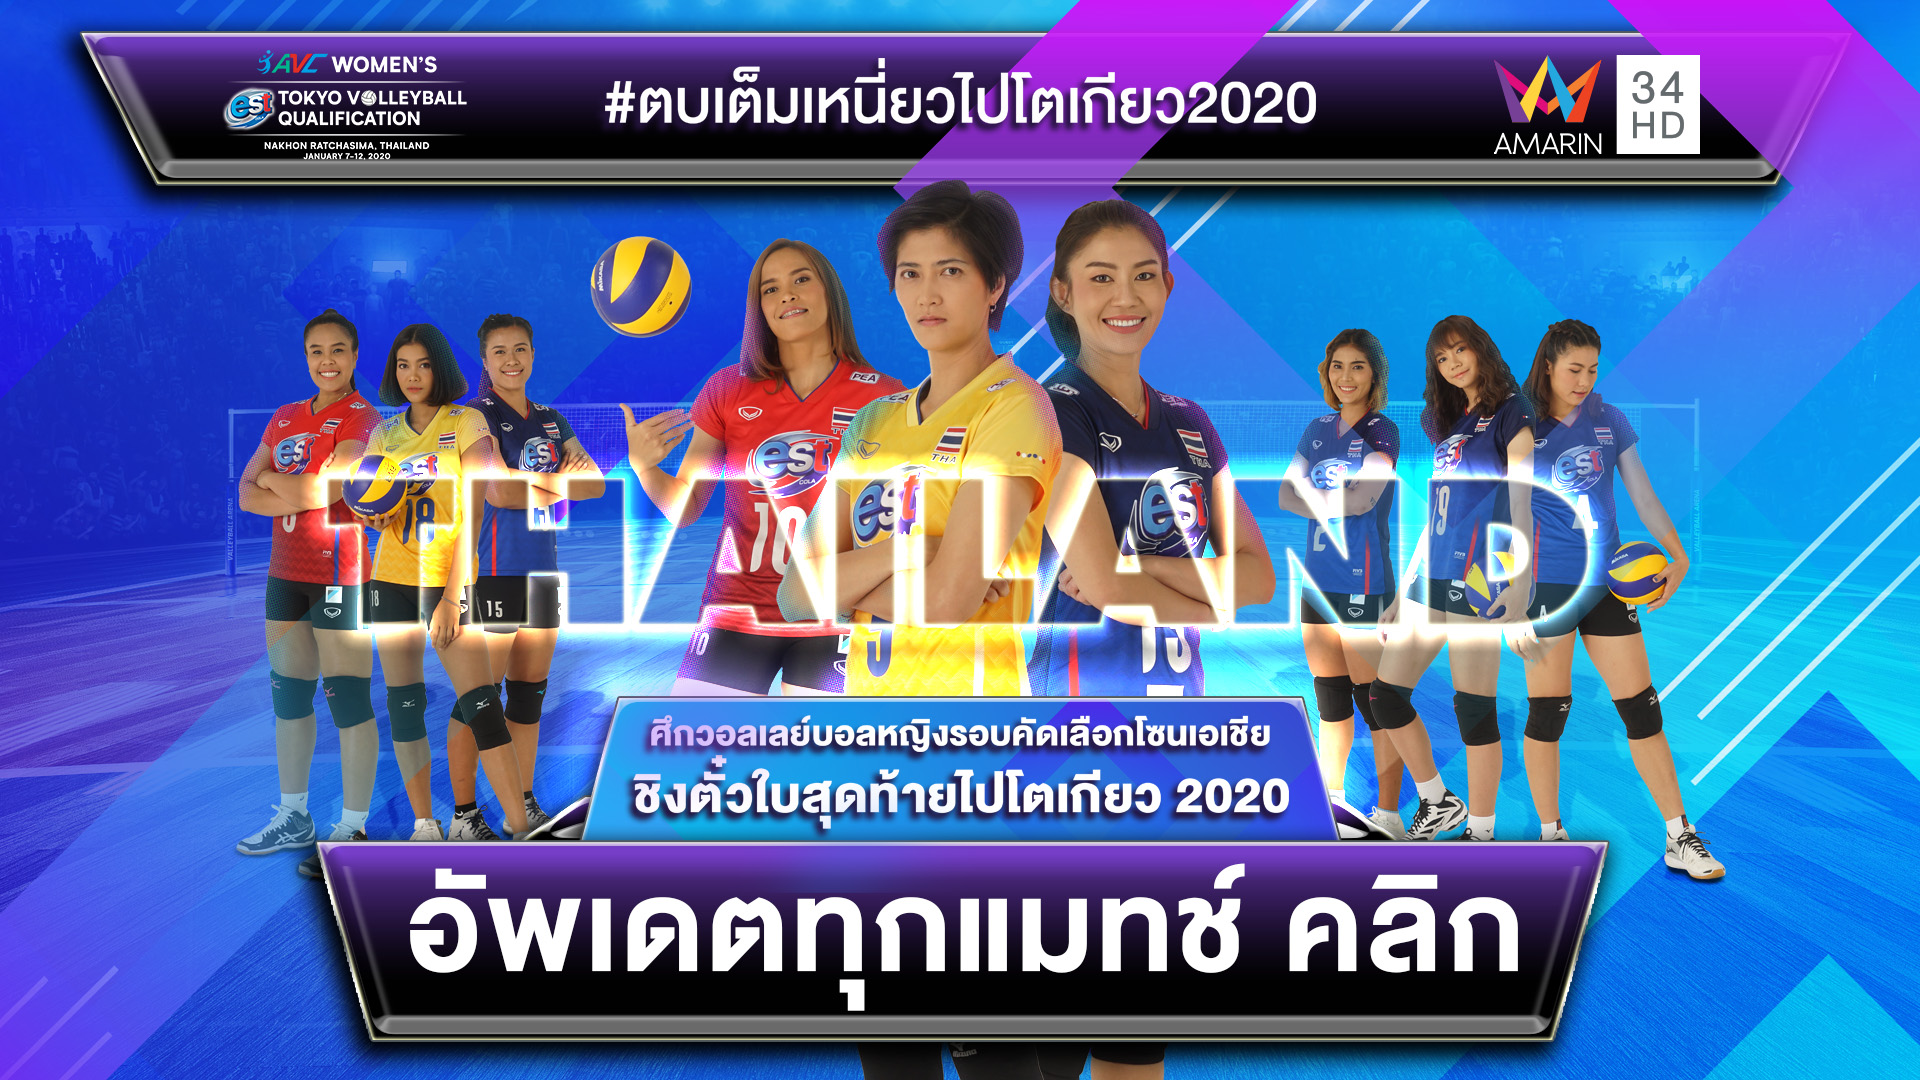 [LIVE] ดูสด วอลเลย์บอลหญิงไทยคัดโอลิมปิก 7-12 ม.ค.63 พร้อมโปรแกรมแข่งขัน #วอลเล่ย์บอลหญิงไทยวันนี้